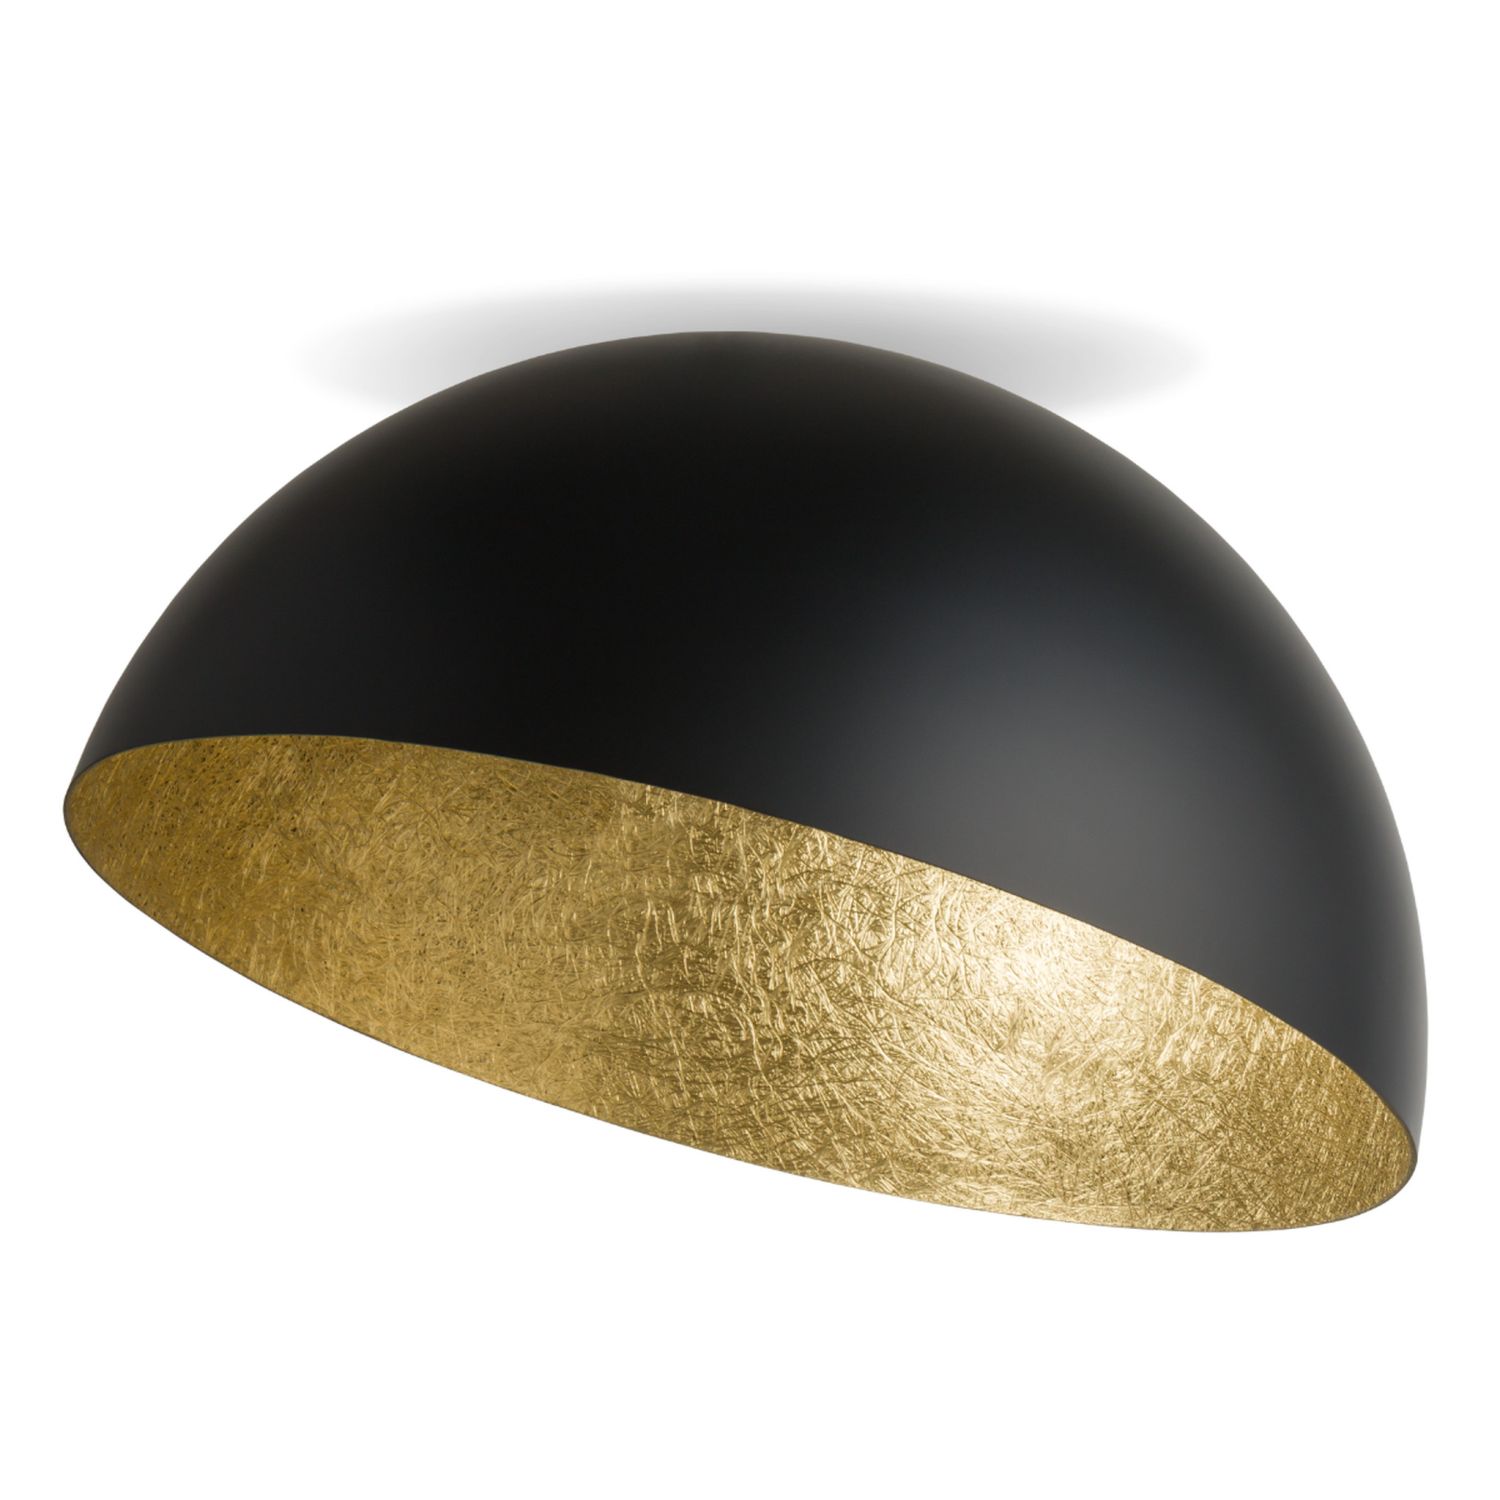 Runde Deckenlampe Metall Gold Schwarz Ø50 cm elegant